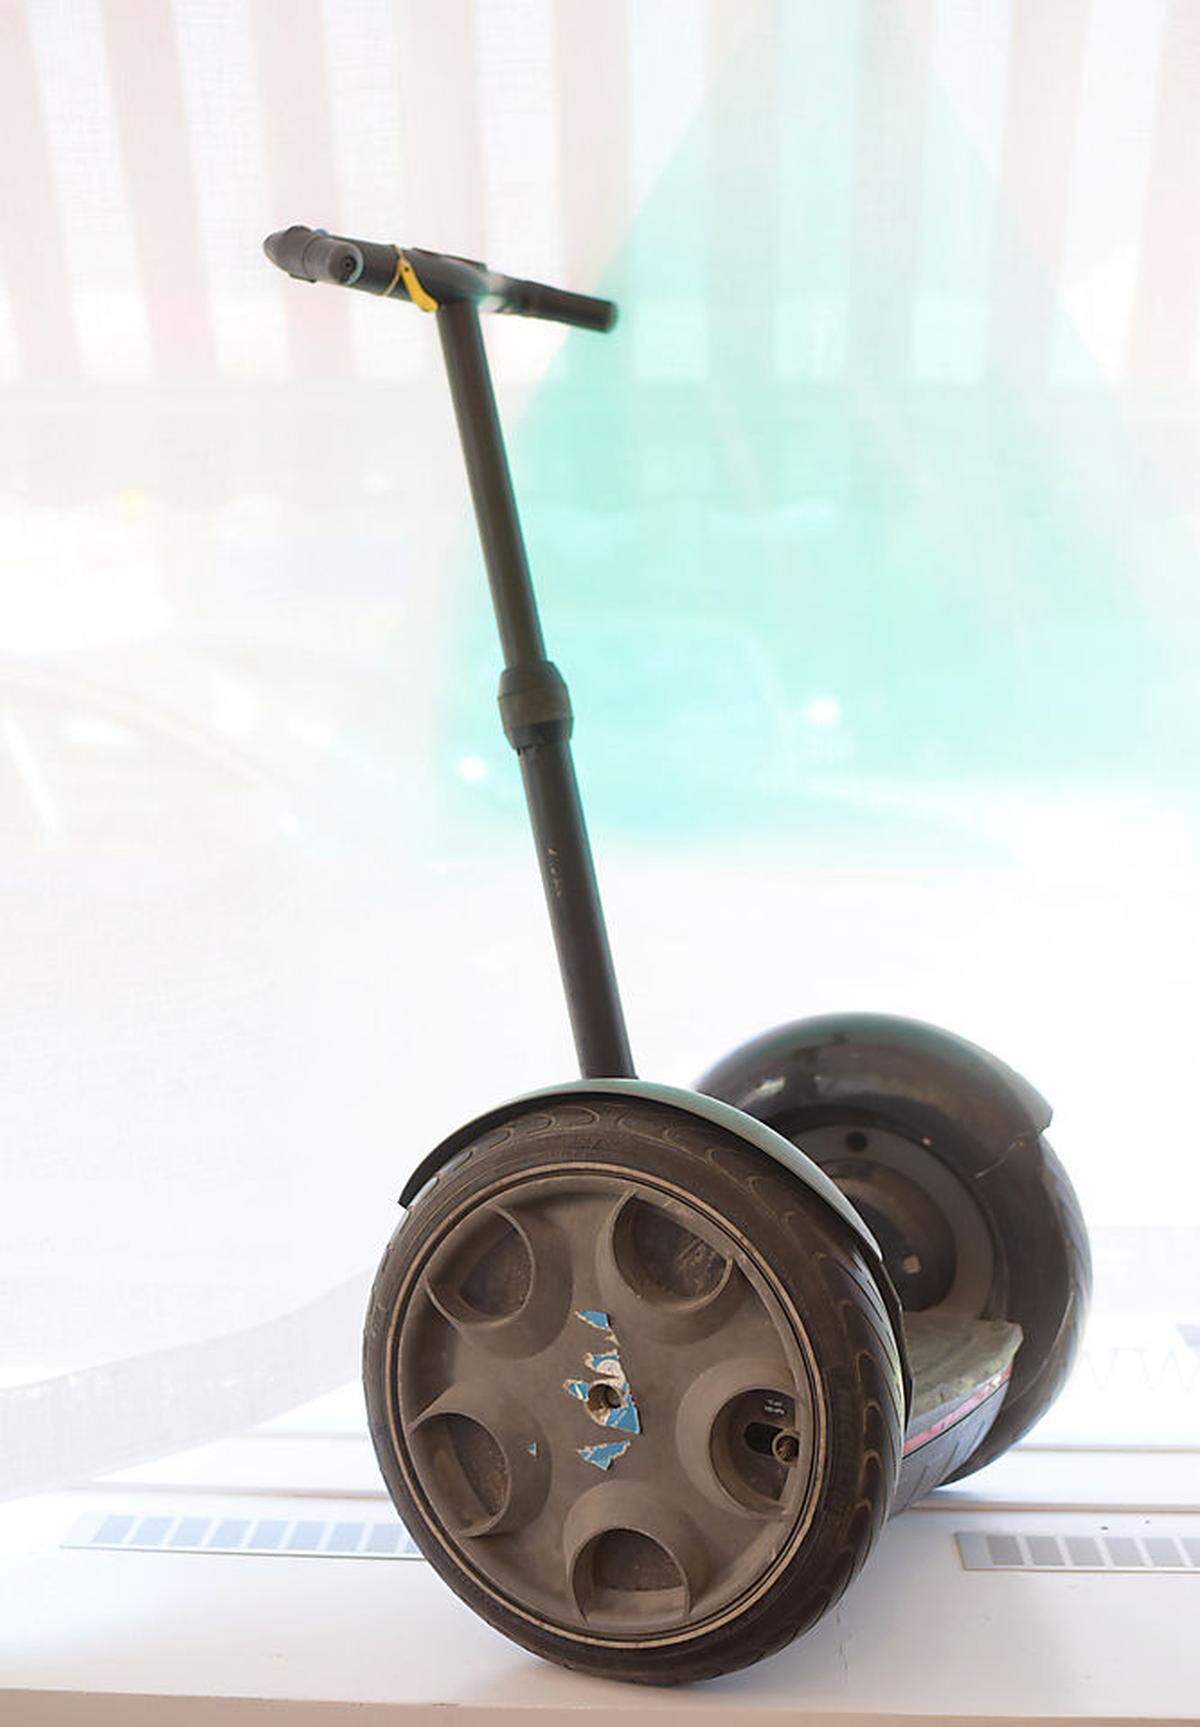 Der Segway wurde nie zu dem erfolgreichen Produkt, für das man ihn Mitte der 2000er-Jahre hielt. Im Bild ein Modell der ersten Segway-Generation mit starrer Lenkstange.